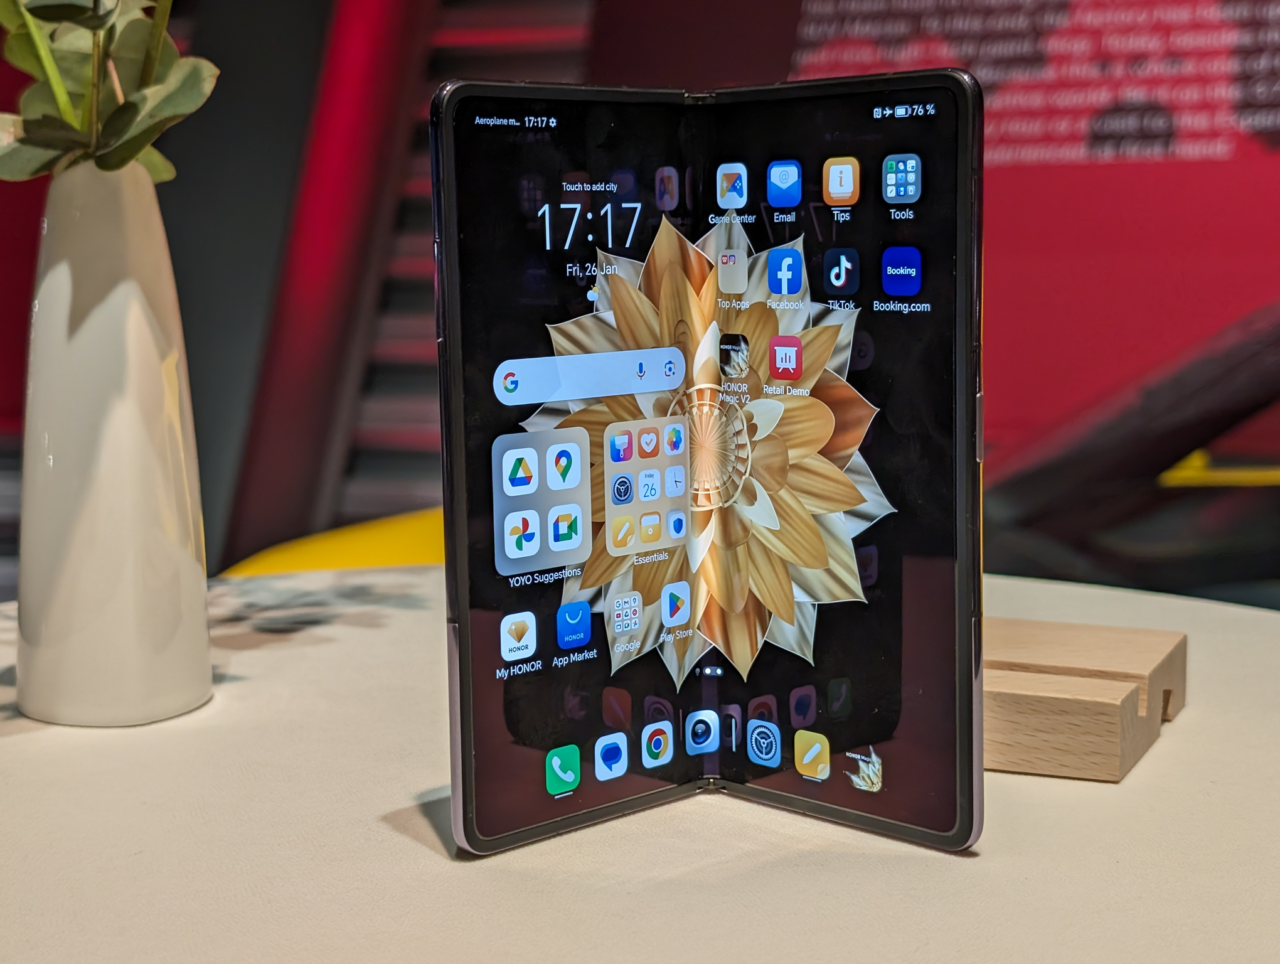 Składany smartfon stoi na stole obok doniczki z rośliną, z wyświetlonym ekranem głównym pełnym ikon aplikacji.